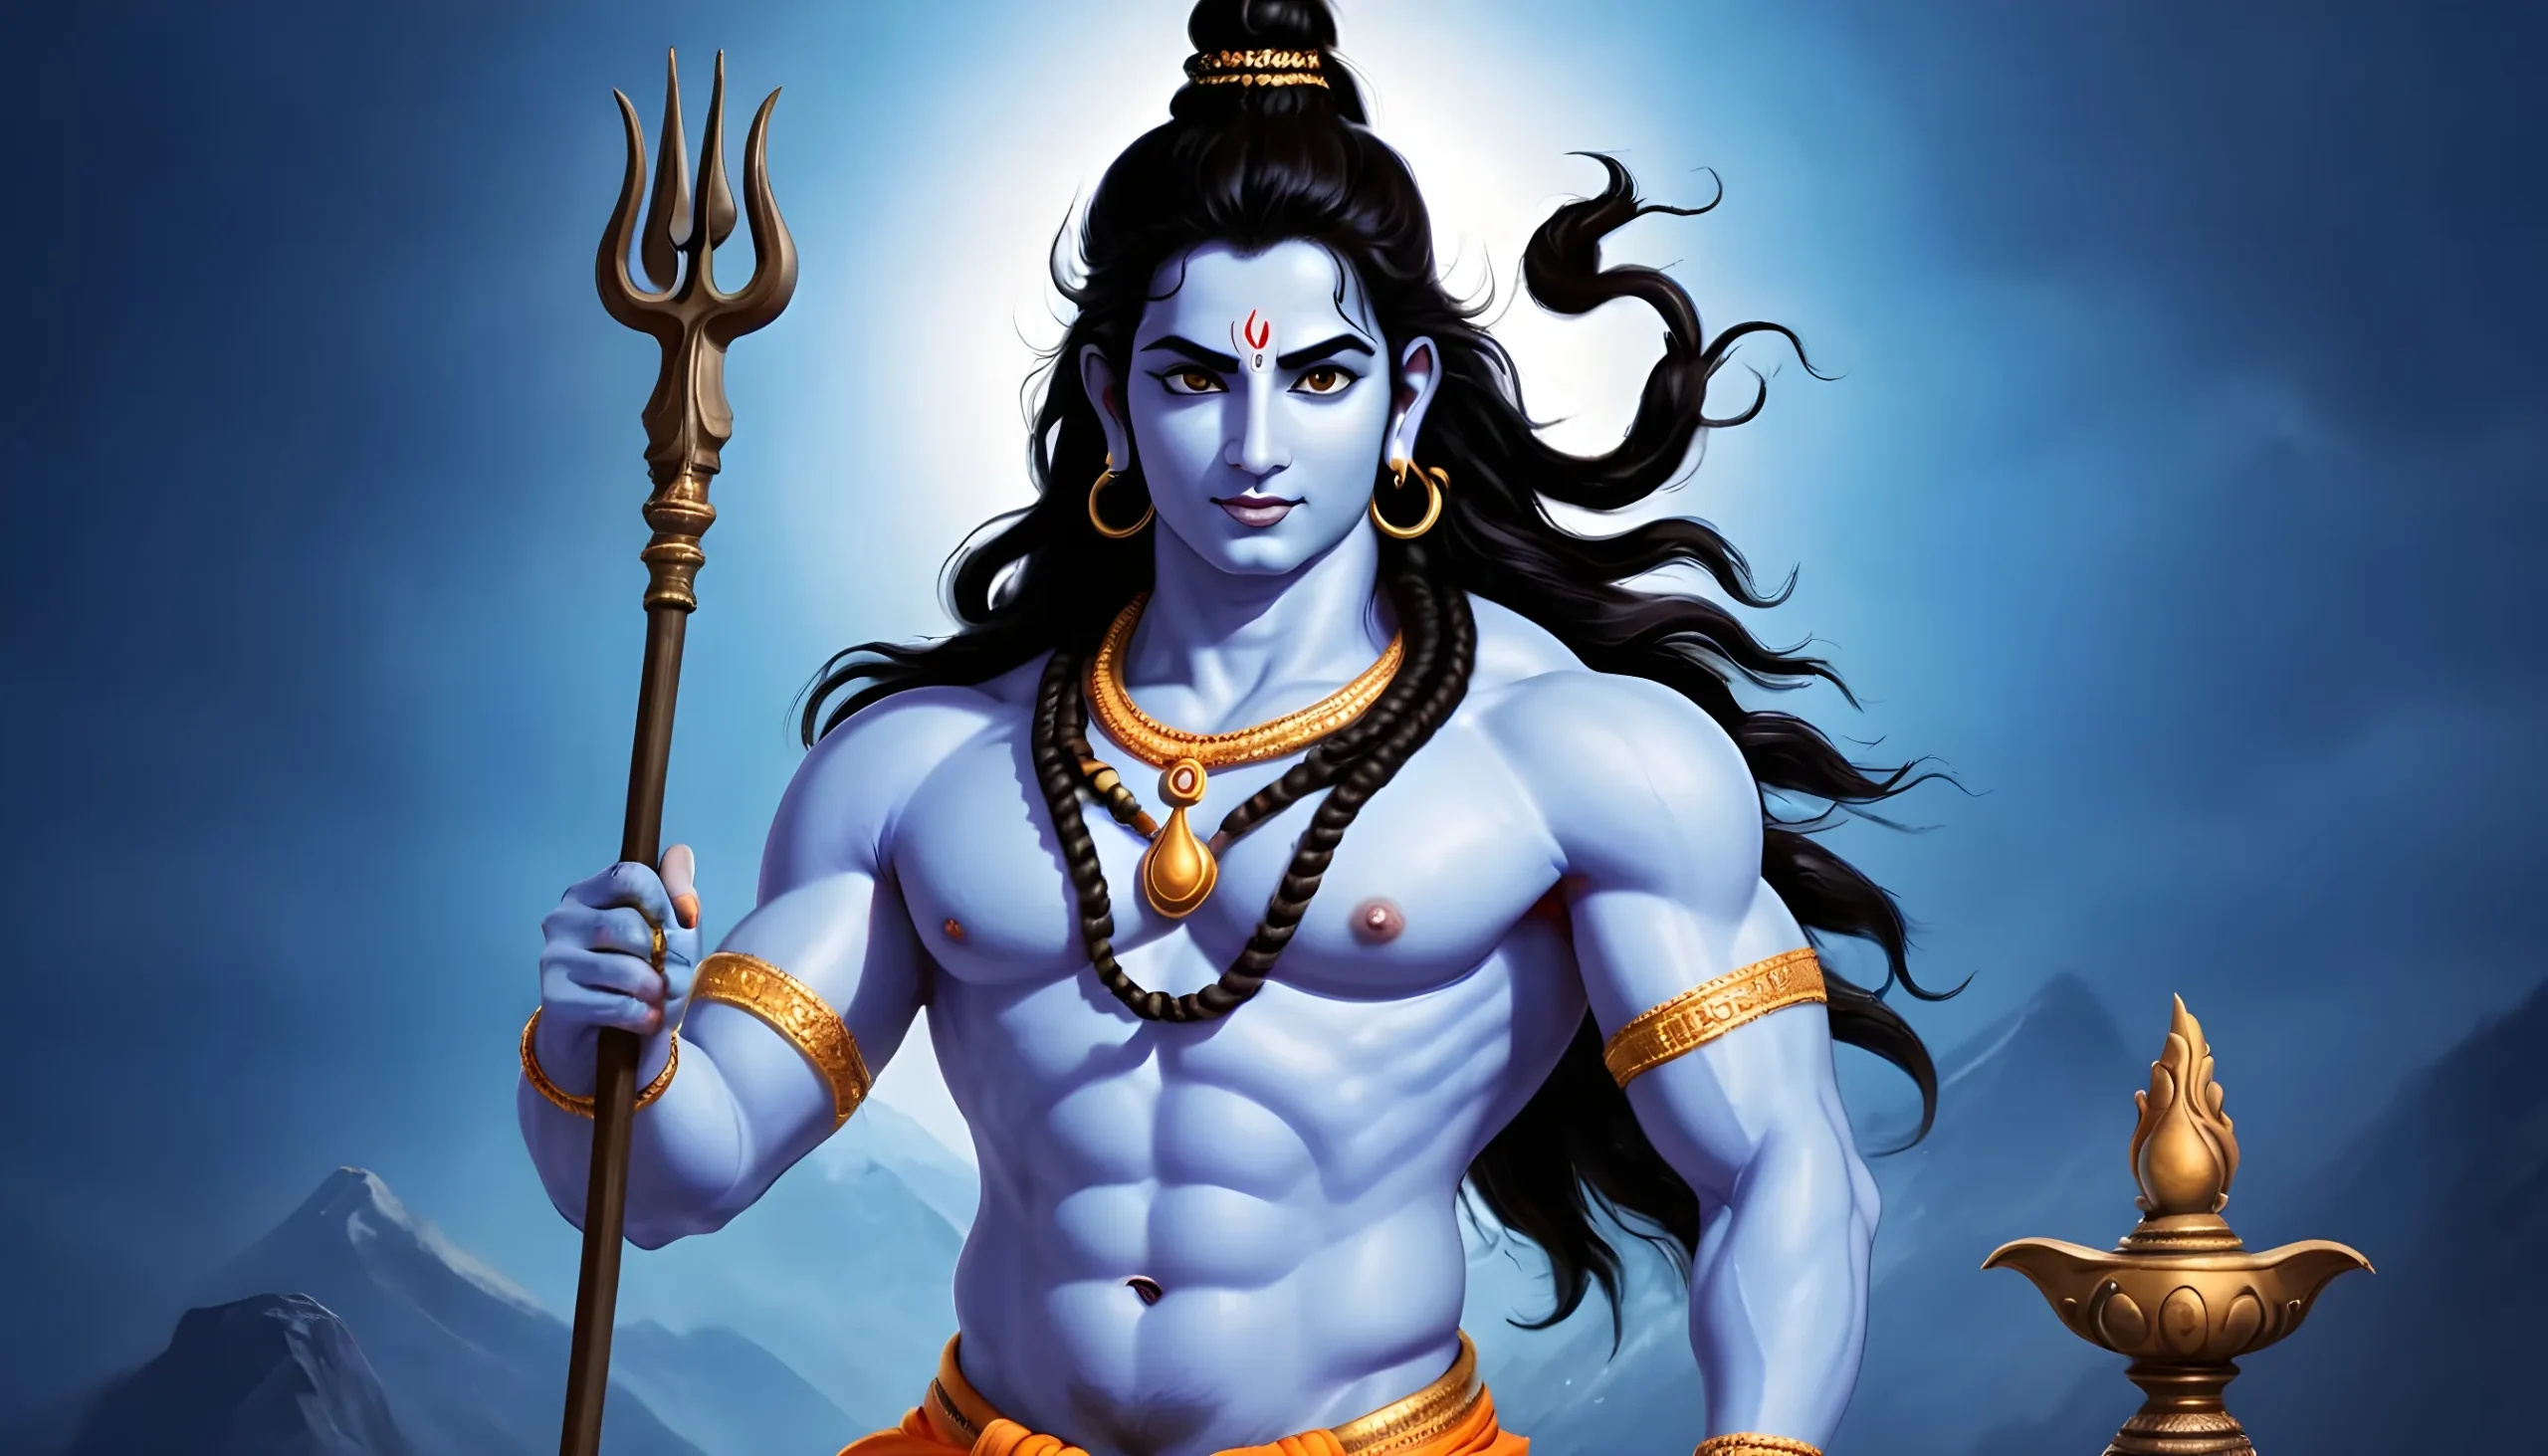 নতুন শিব ঠাকুরের ছবি - lord shiva picture 9